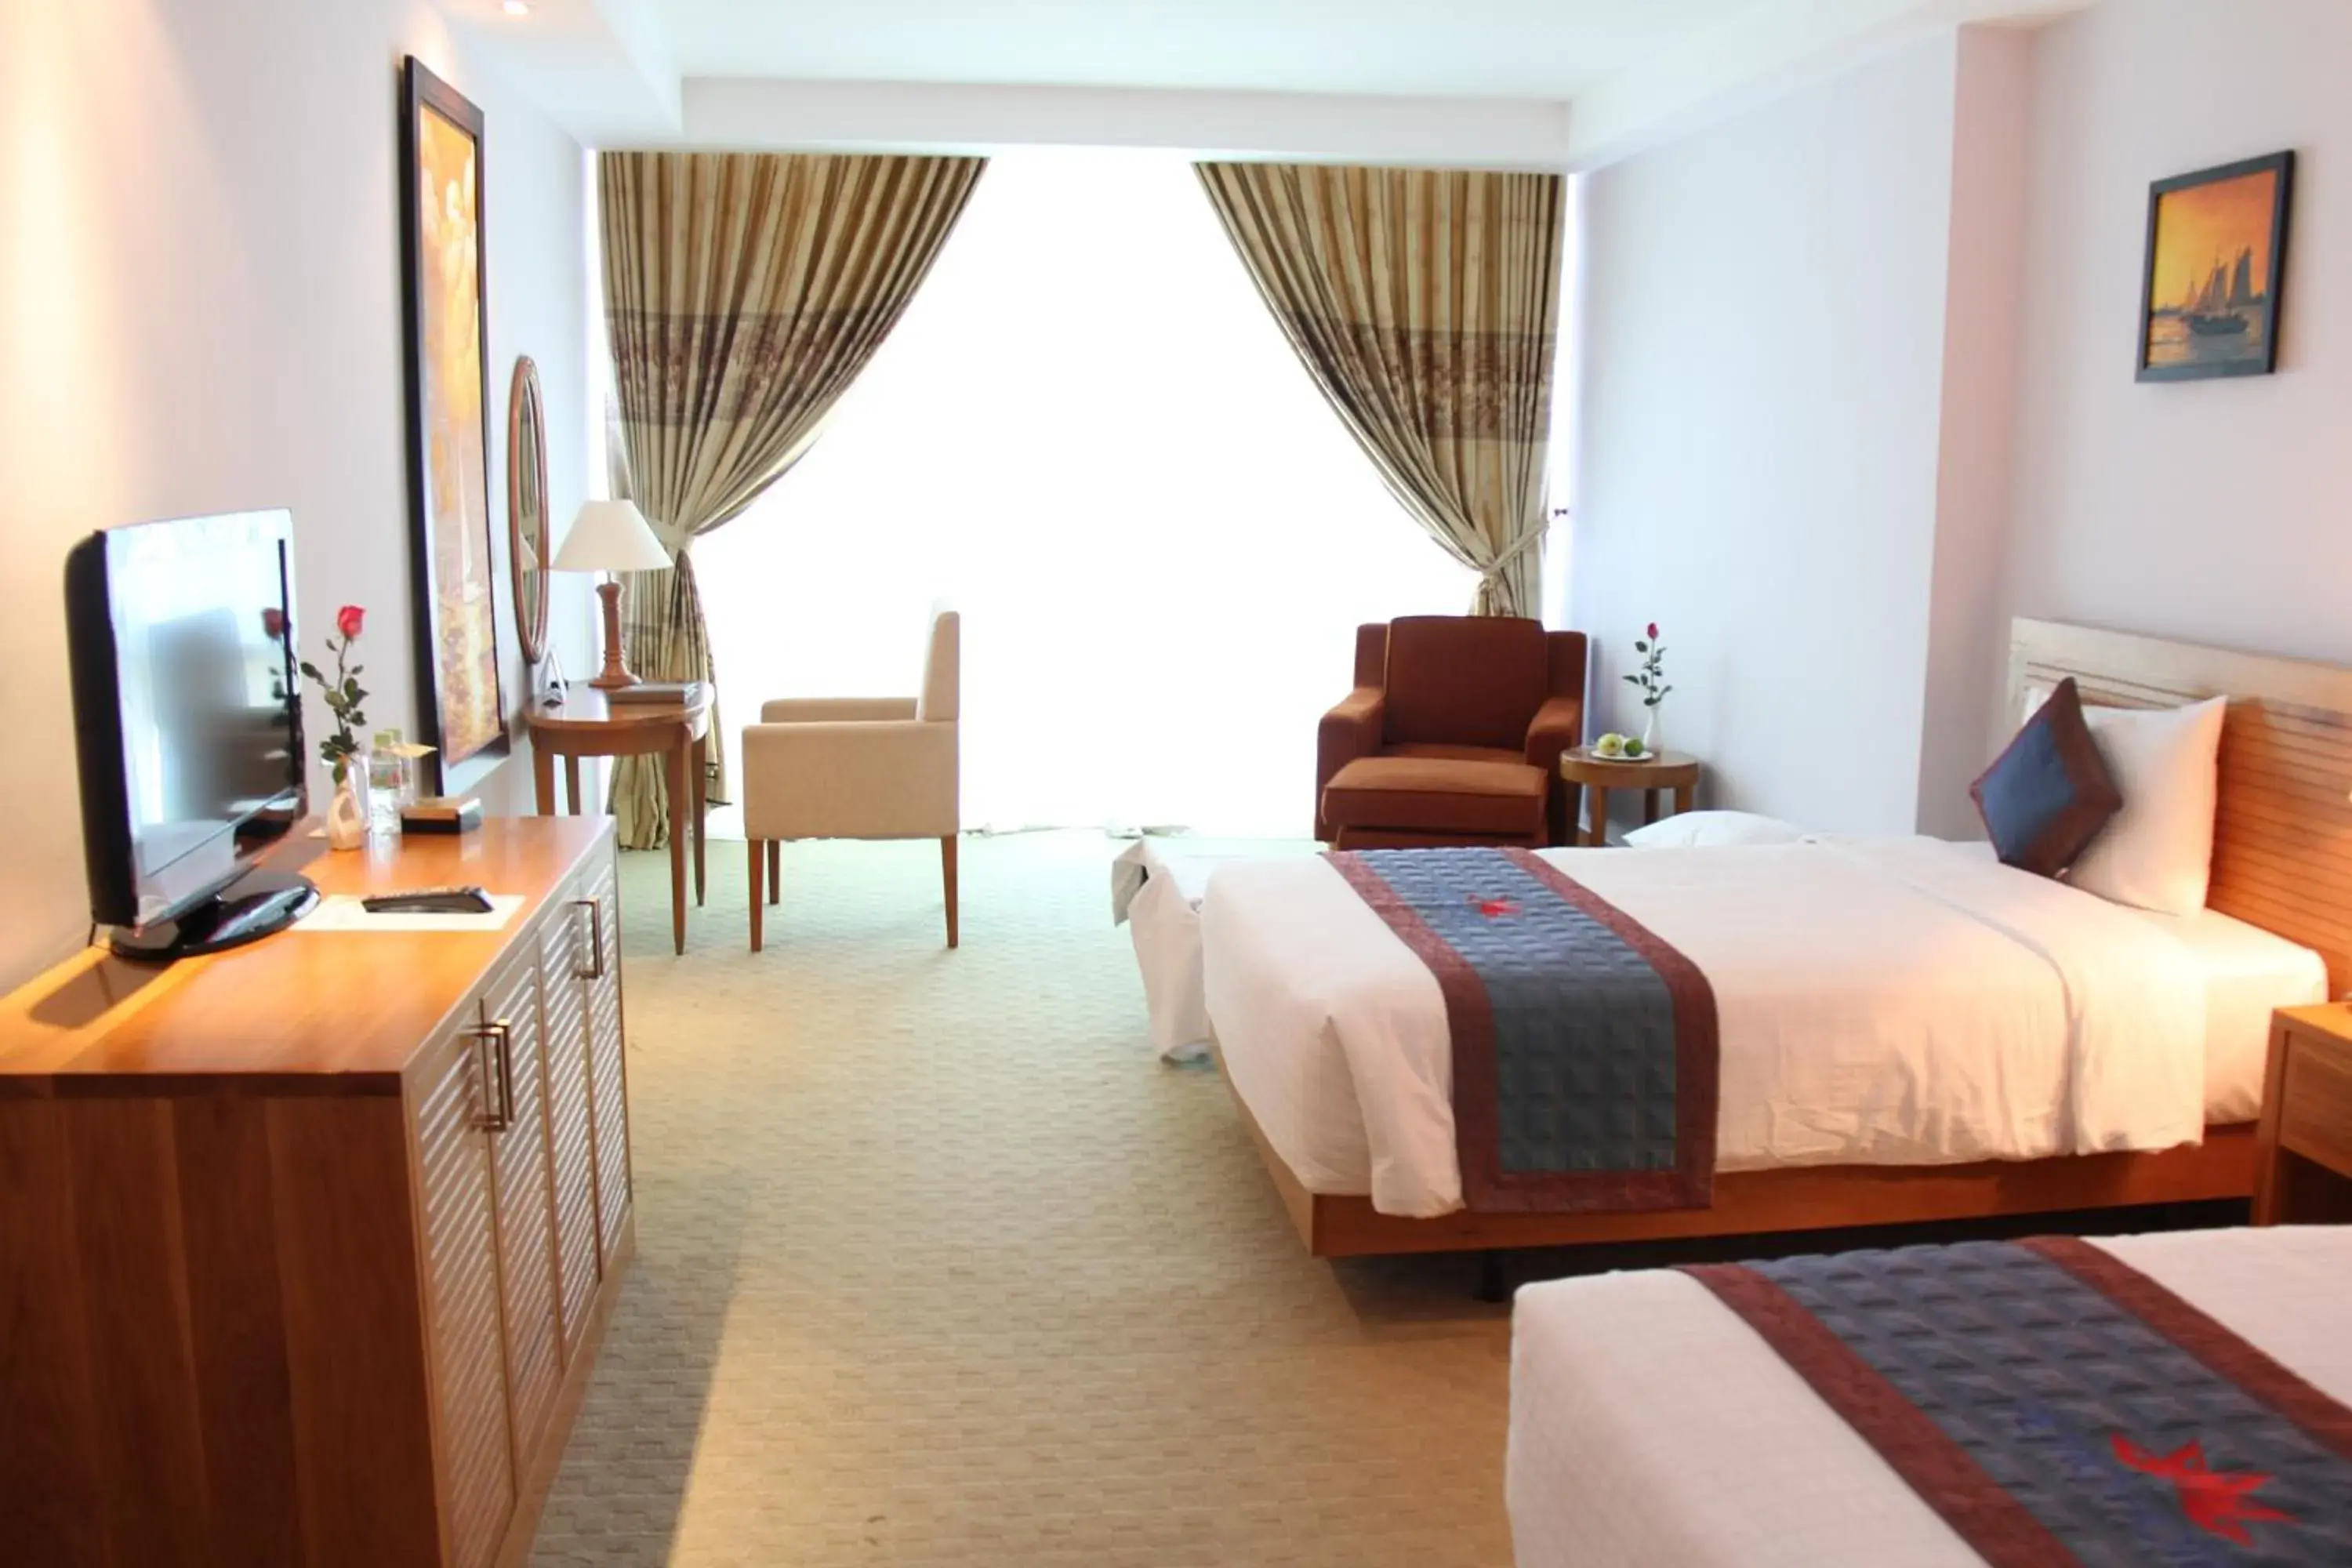 Sea view, Room Photo in Petro Hotel